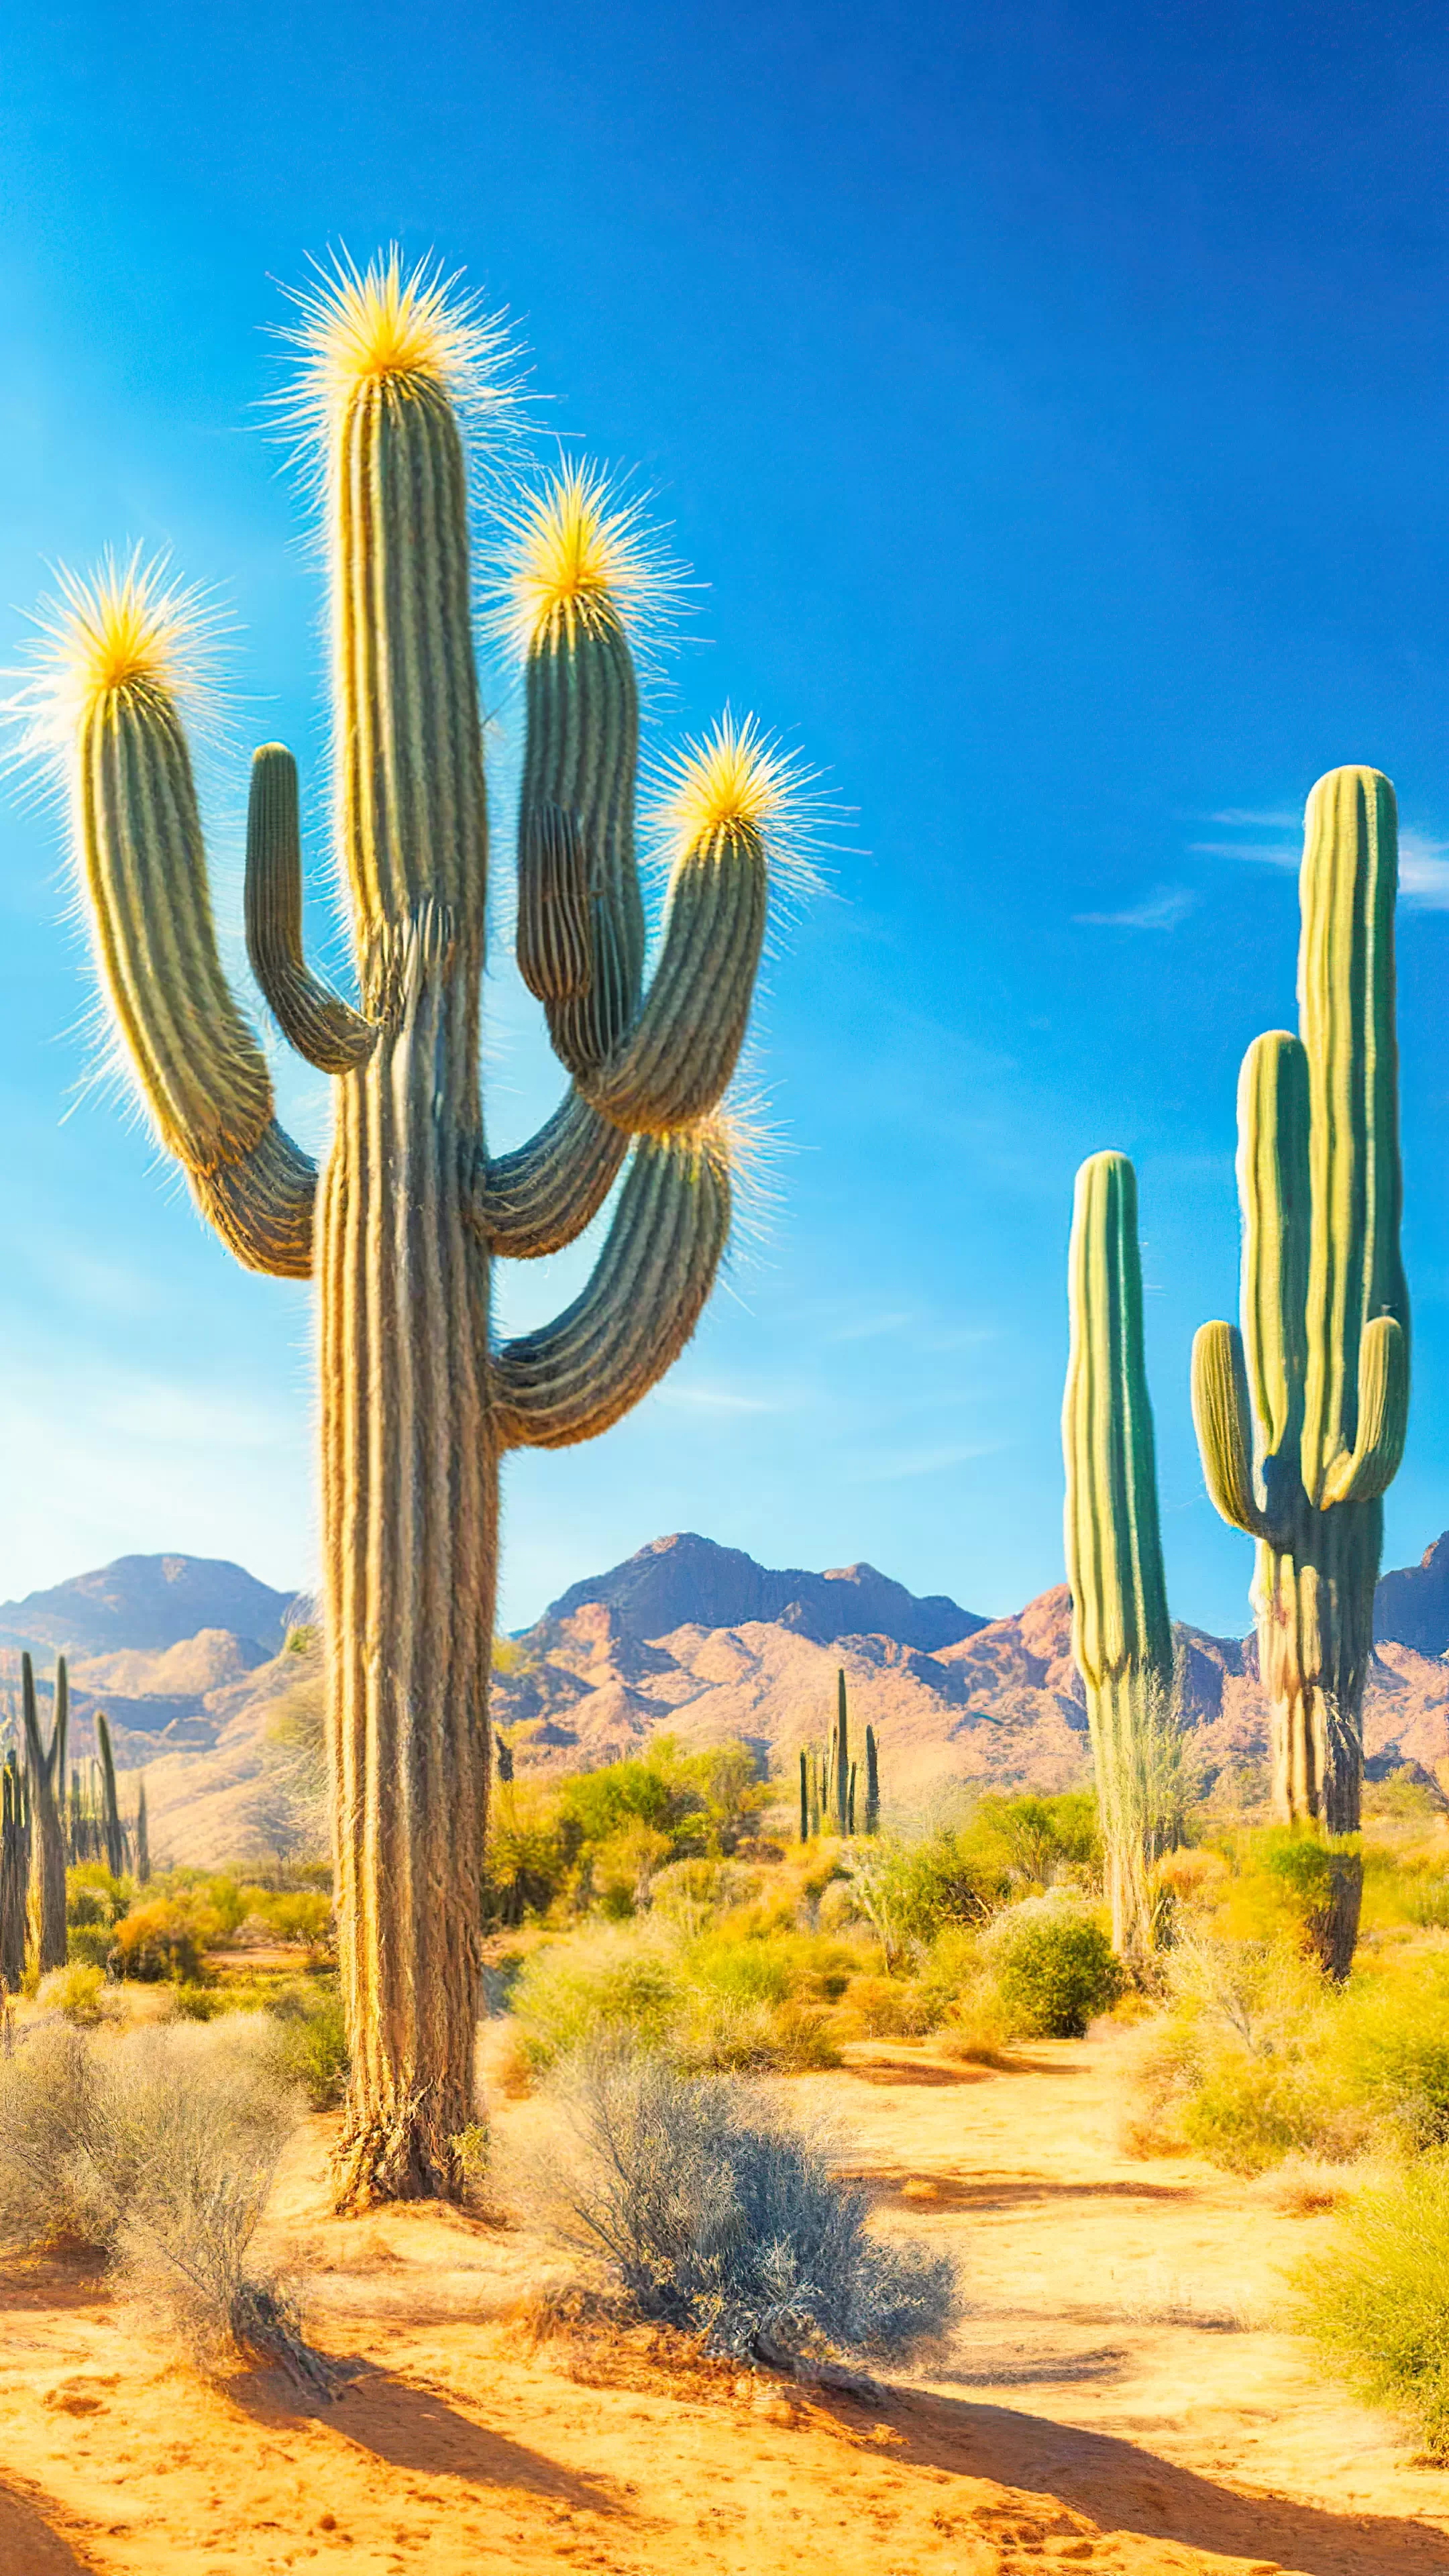 Découvrez l'immensité d'un paysage désertique parsemé de cactus saguaro sous des cieux bleus avec notre fond d'écran de nature en 1080p, et laissez votre appareil devenir un portail vers la beauté robuste de la nature sauvage.